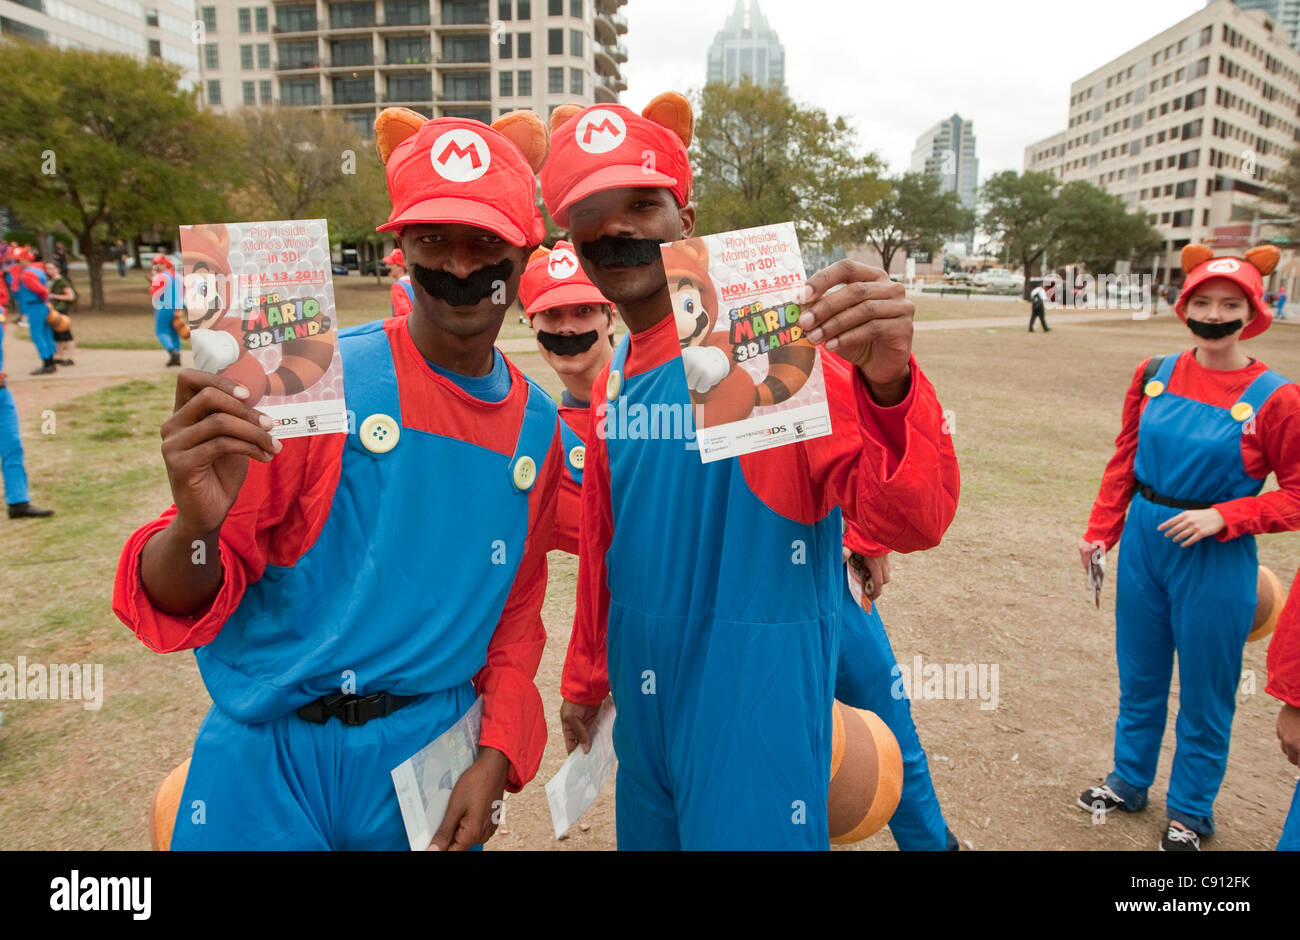 Gruppe von Menschen, die engagiert für ein Flash-Mob-marketing-Kampagne von Nintendo, Super Mario 3D Insel, ein neues Videospiel zu fördern Stockfoto